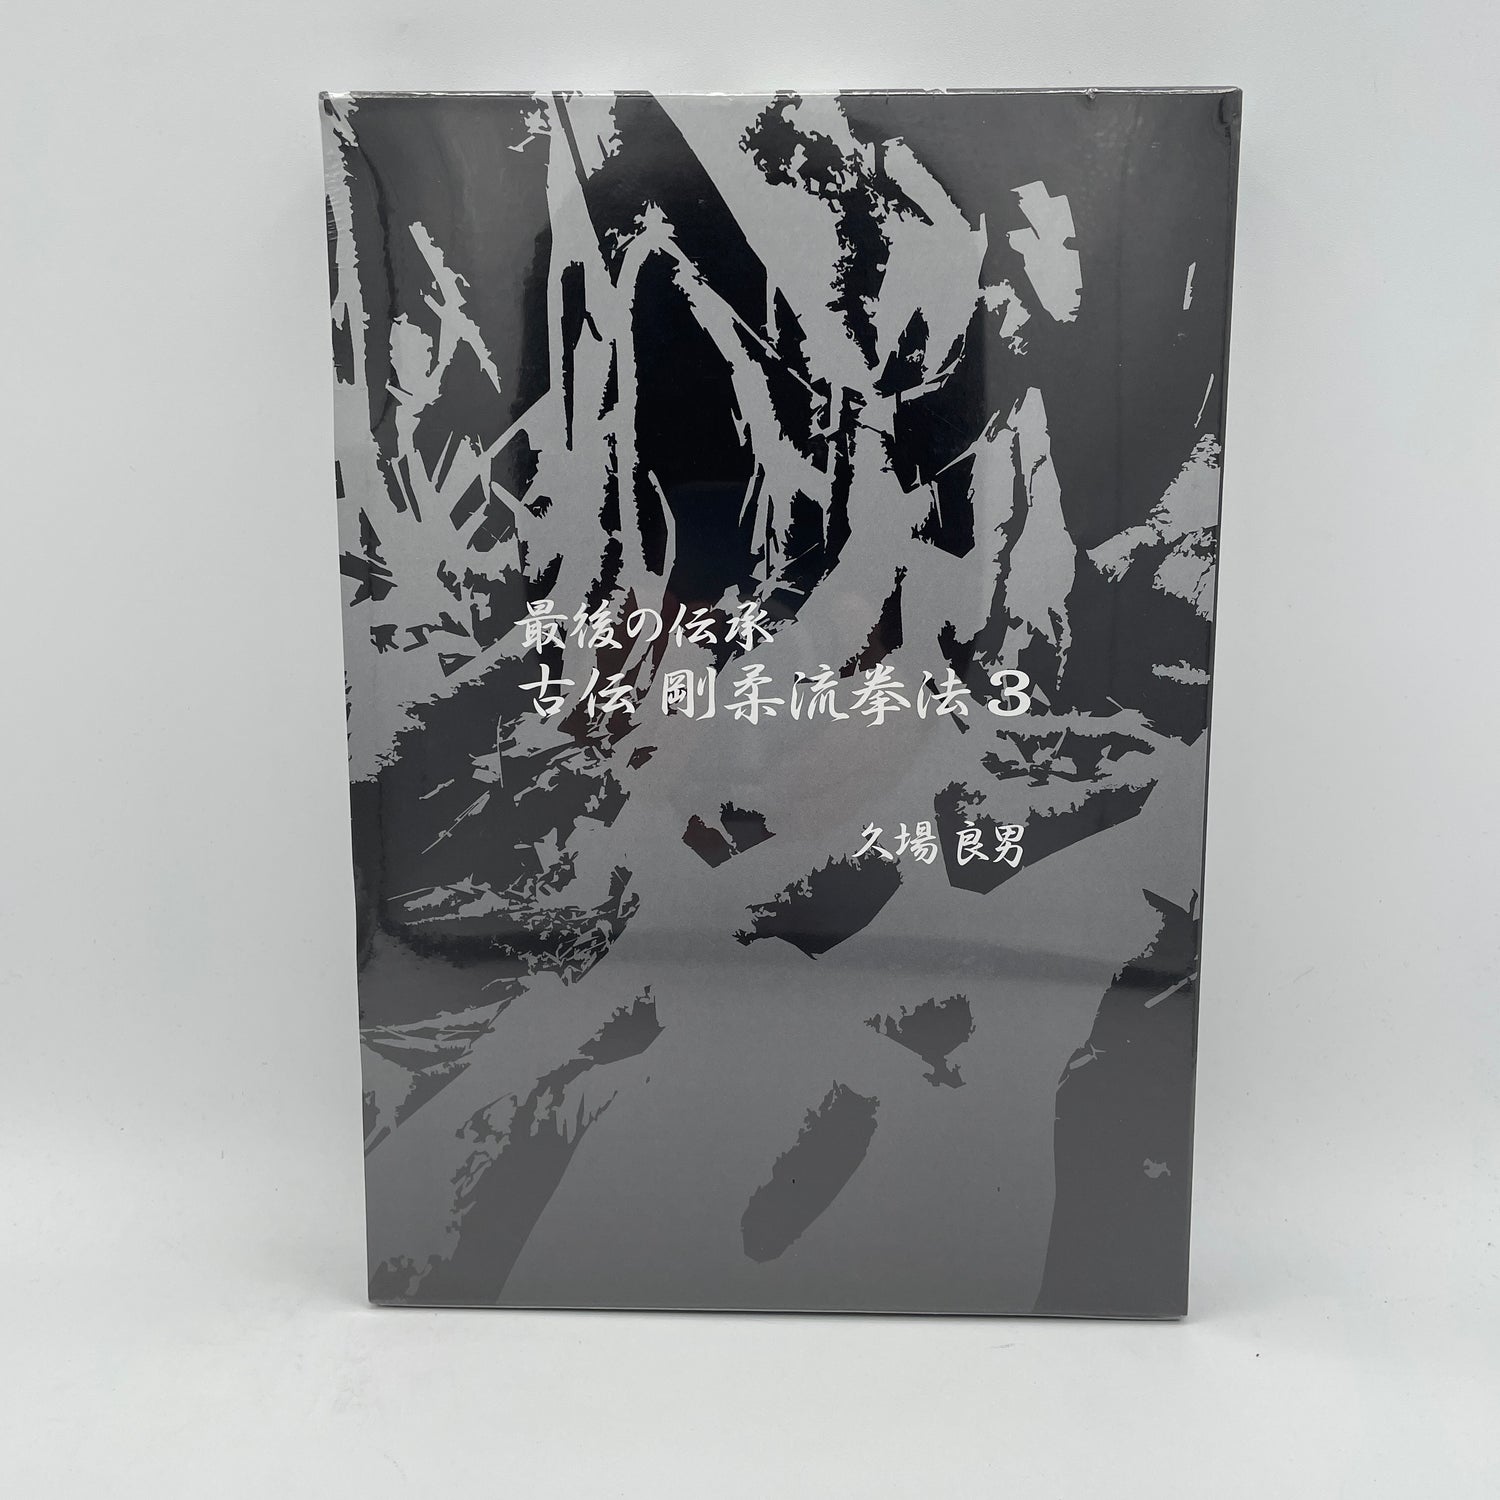 Lógica clásica del último libro y DVD tradicional de Goju-ryu Kempo Vol 3 